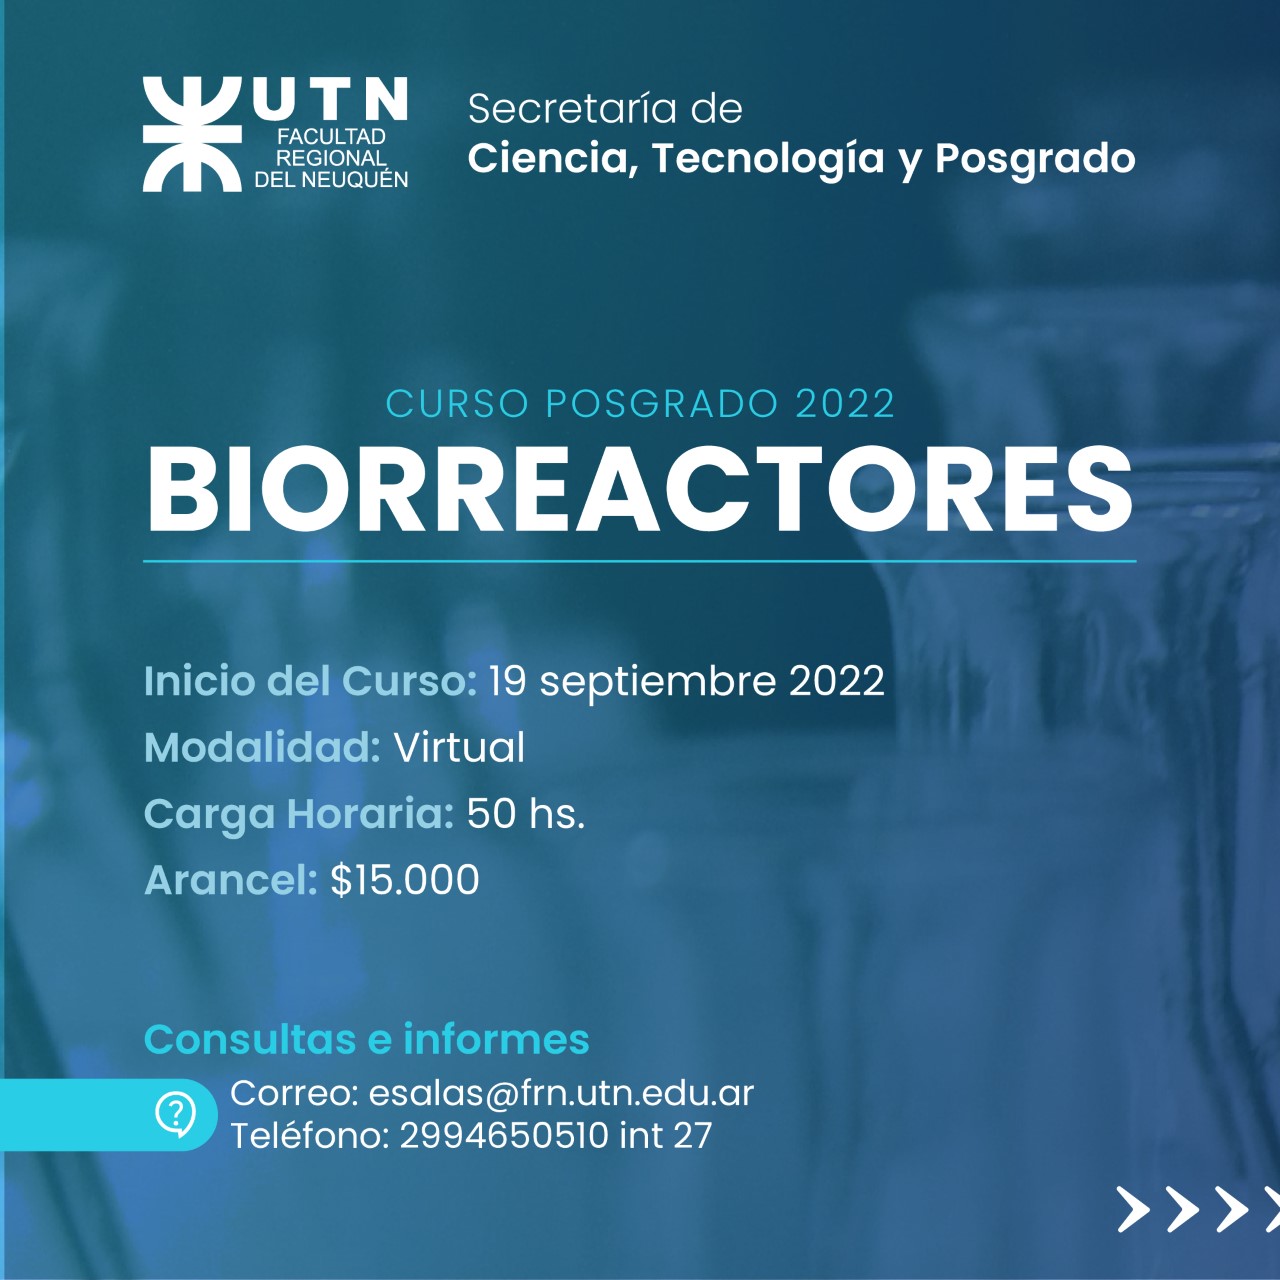 Curso de Posgrado de Biorreactores 2022